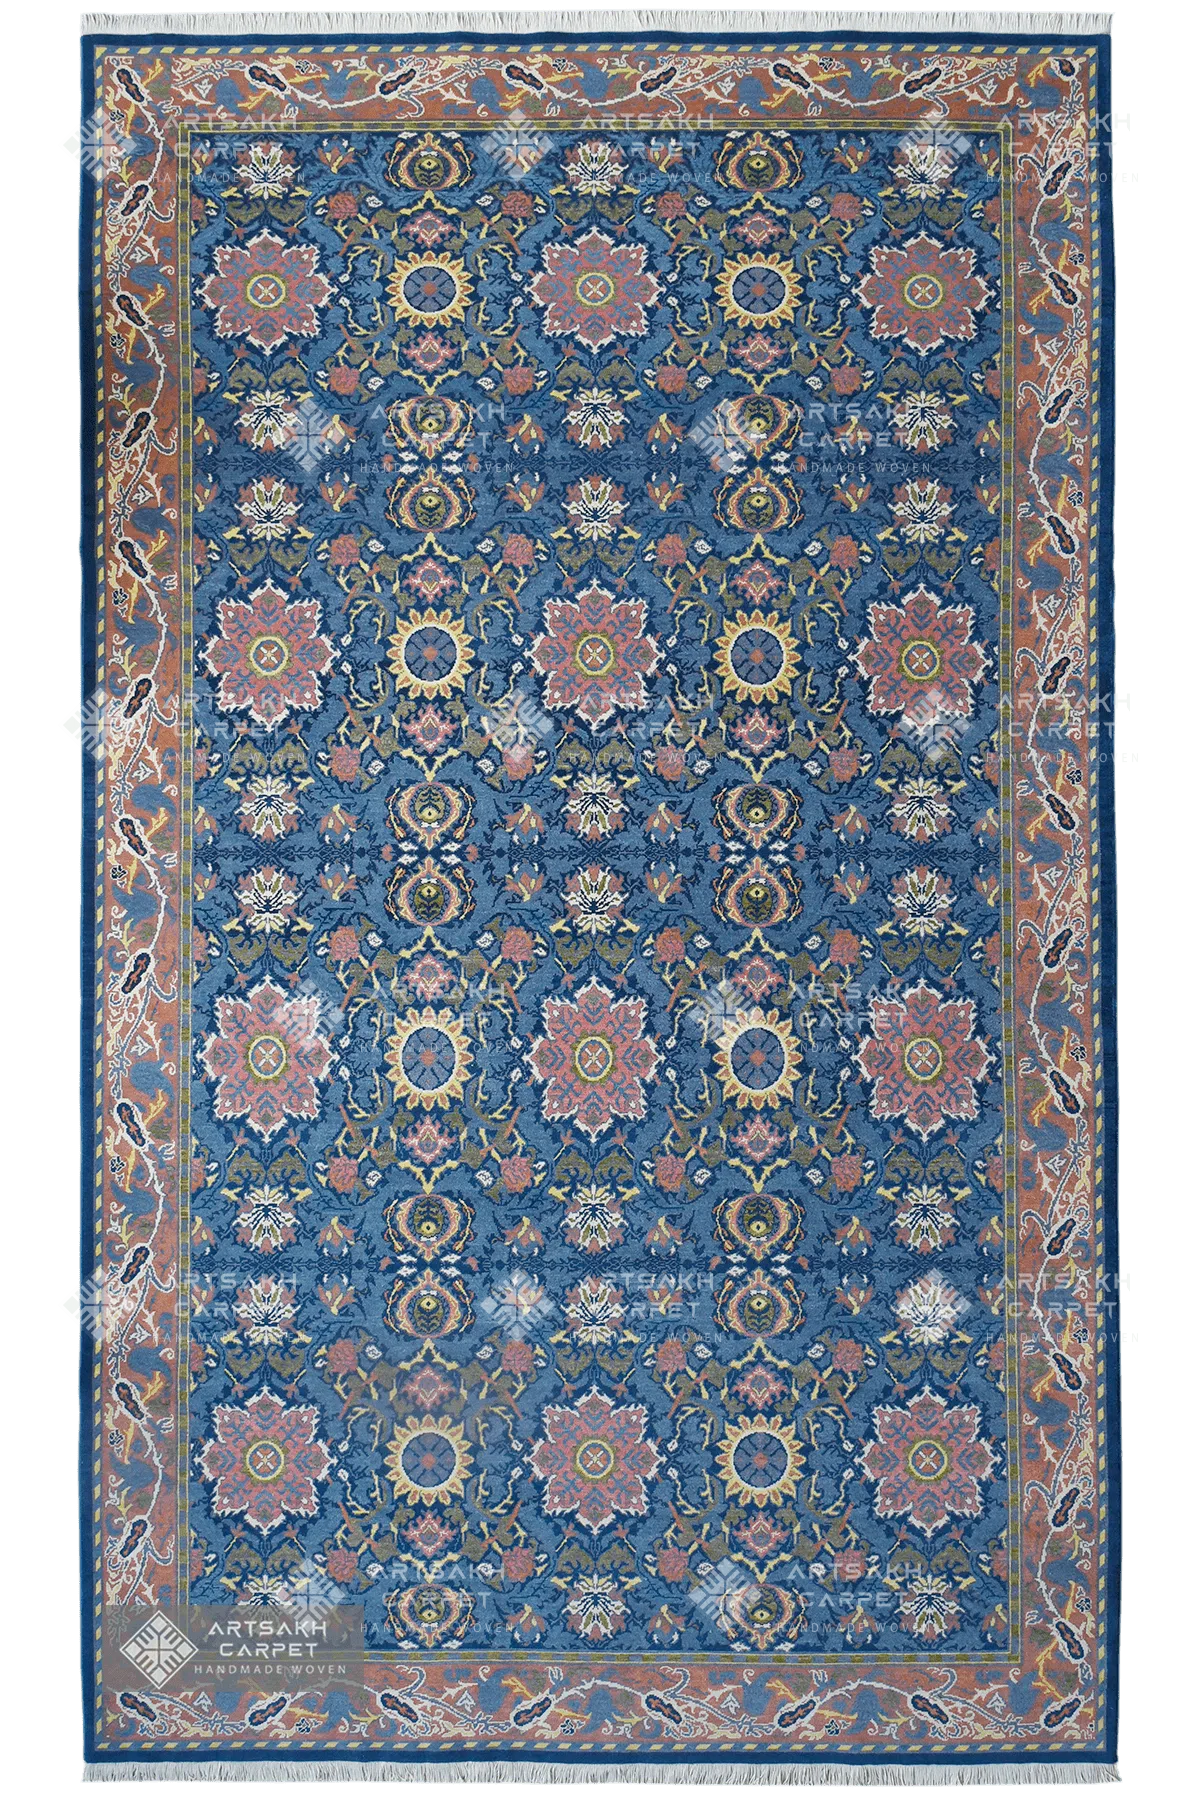 Armenian classic carpet